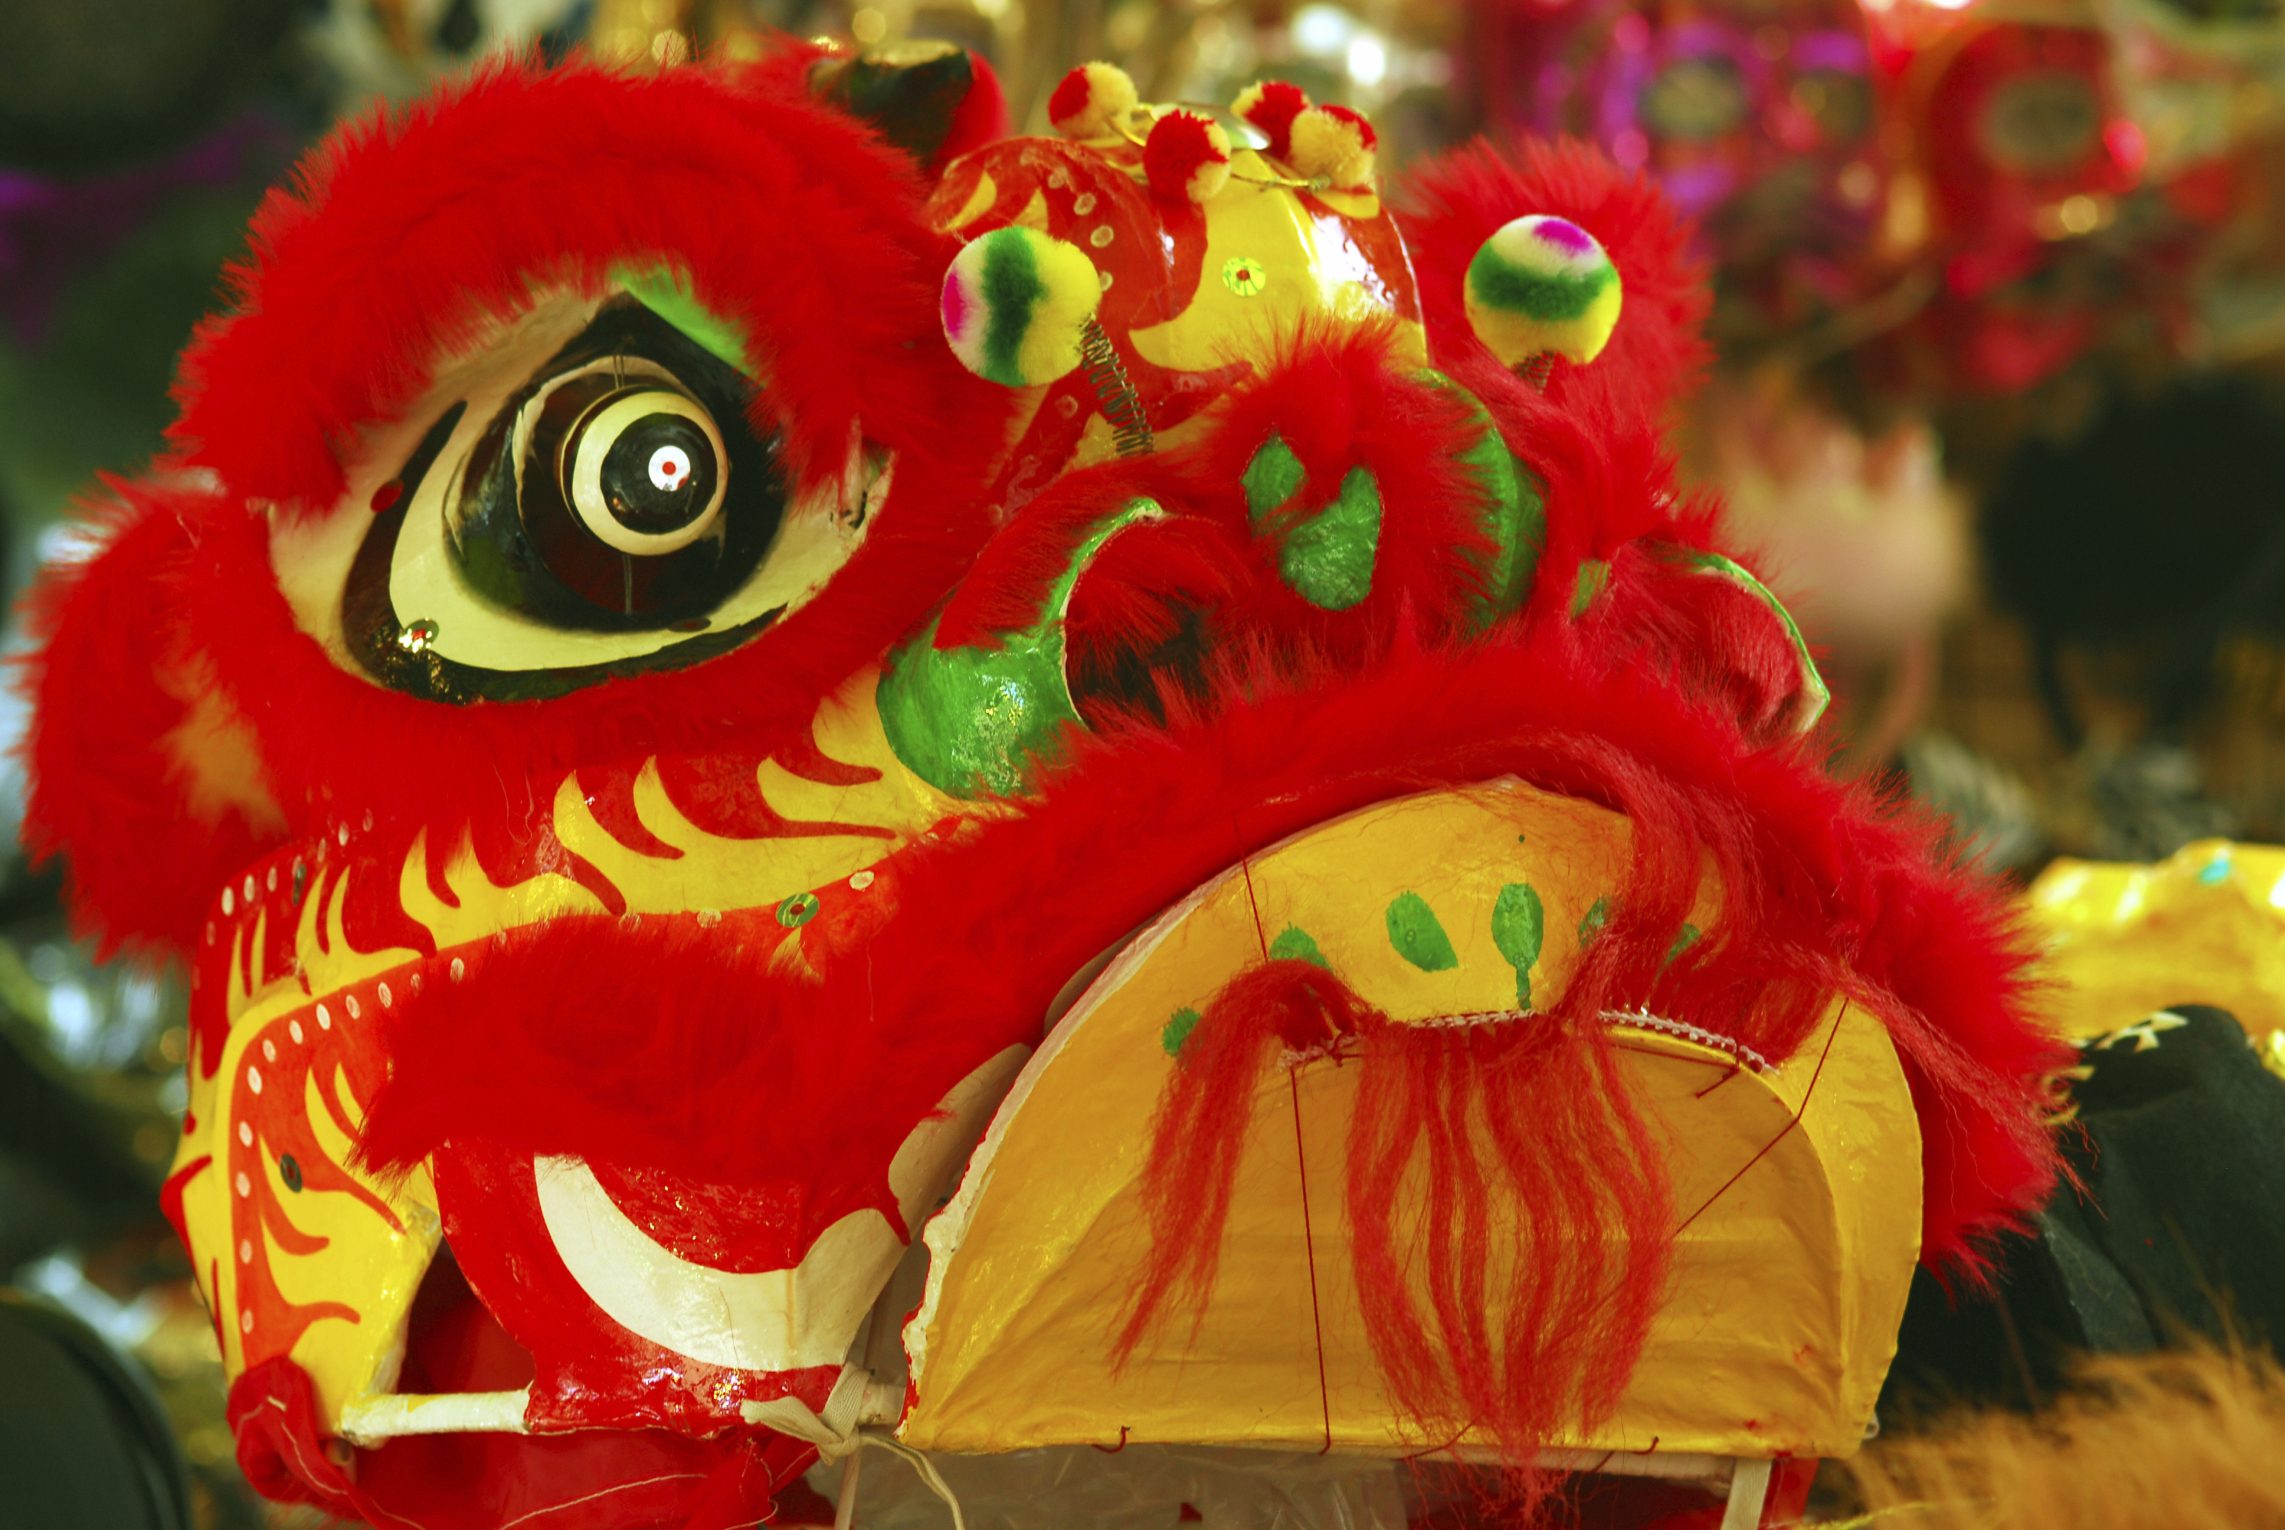 Chinese New Year dragon, Hong Kong